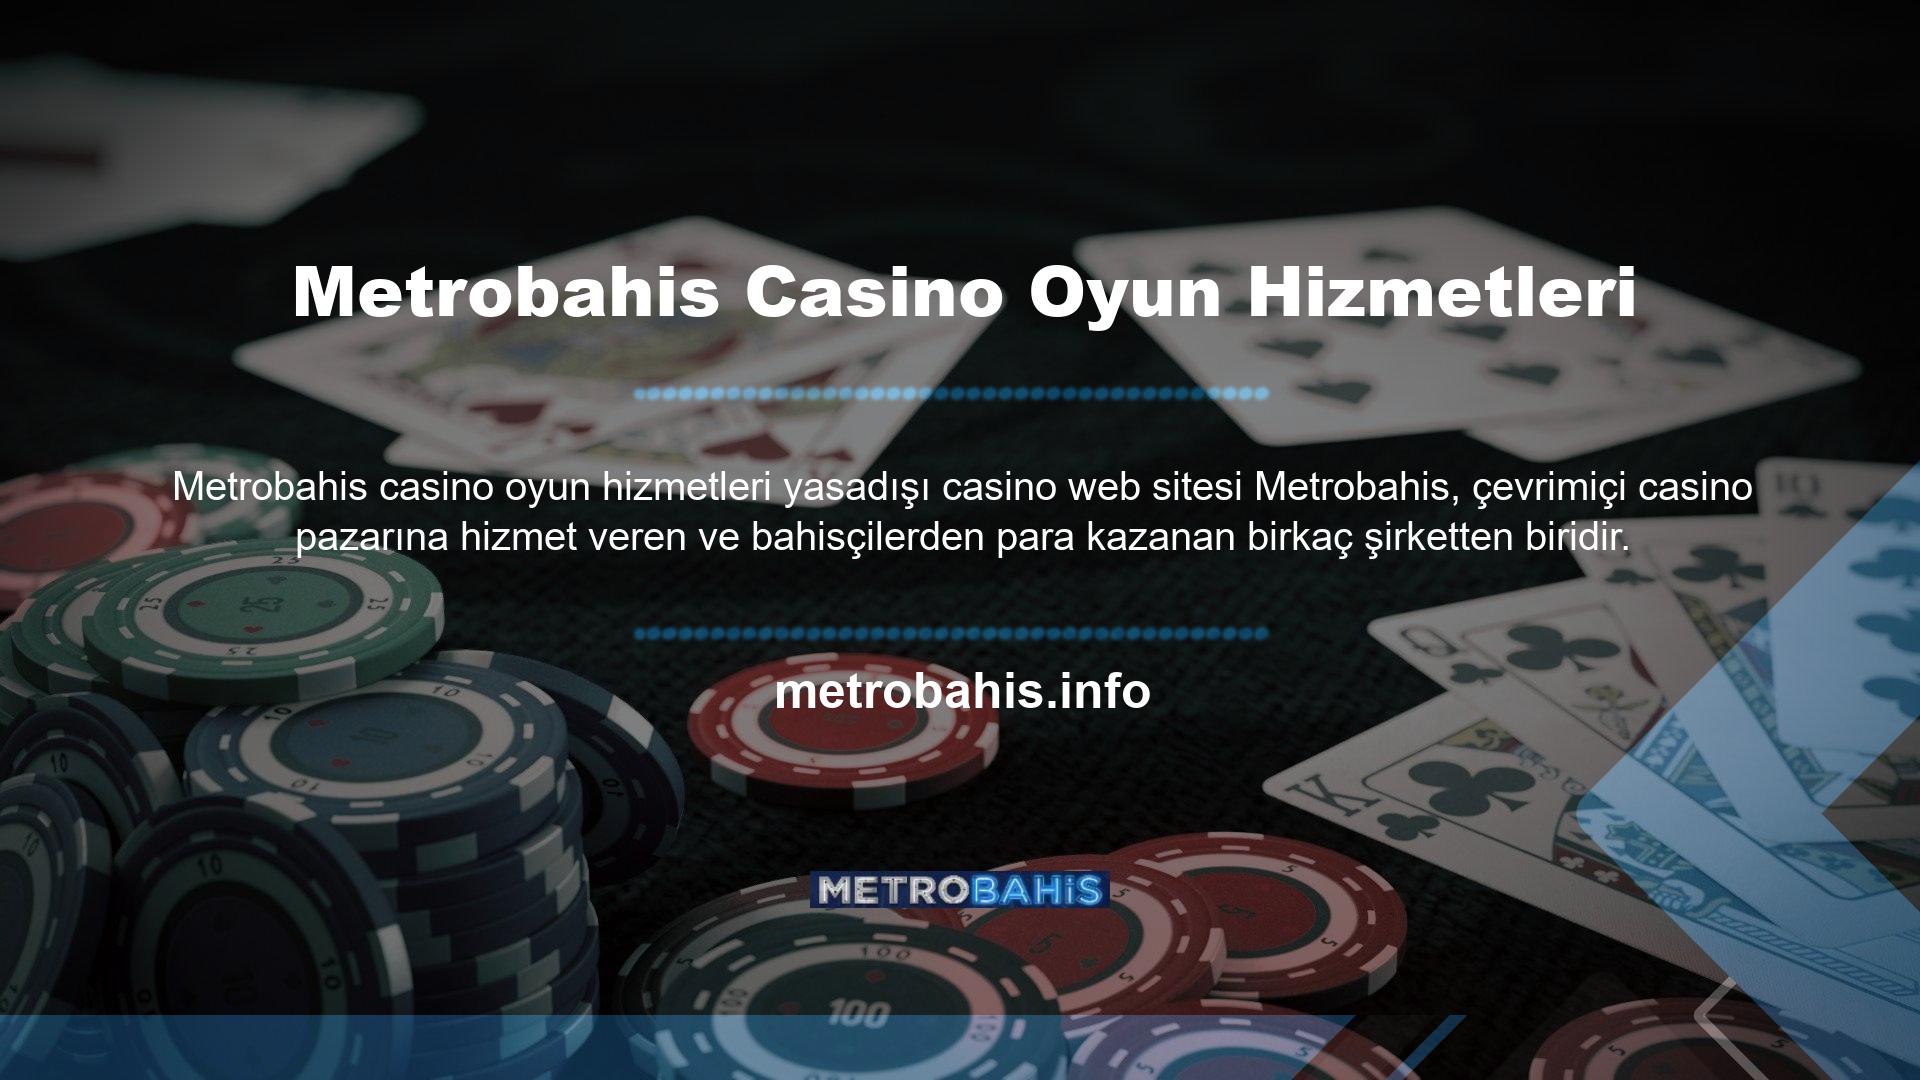 Metrobahis bahis sitesi, gerçek zamanlı bahis ve casino oyun hizmetleri söz konusu olduğunda internet lideridir ve içeriği, tüm oyuncuların ihtiyaçlarını akıllıca karşılamaktadır